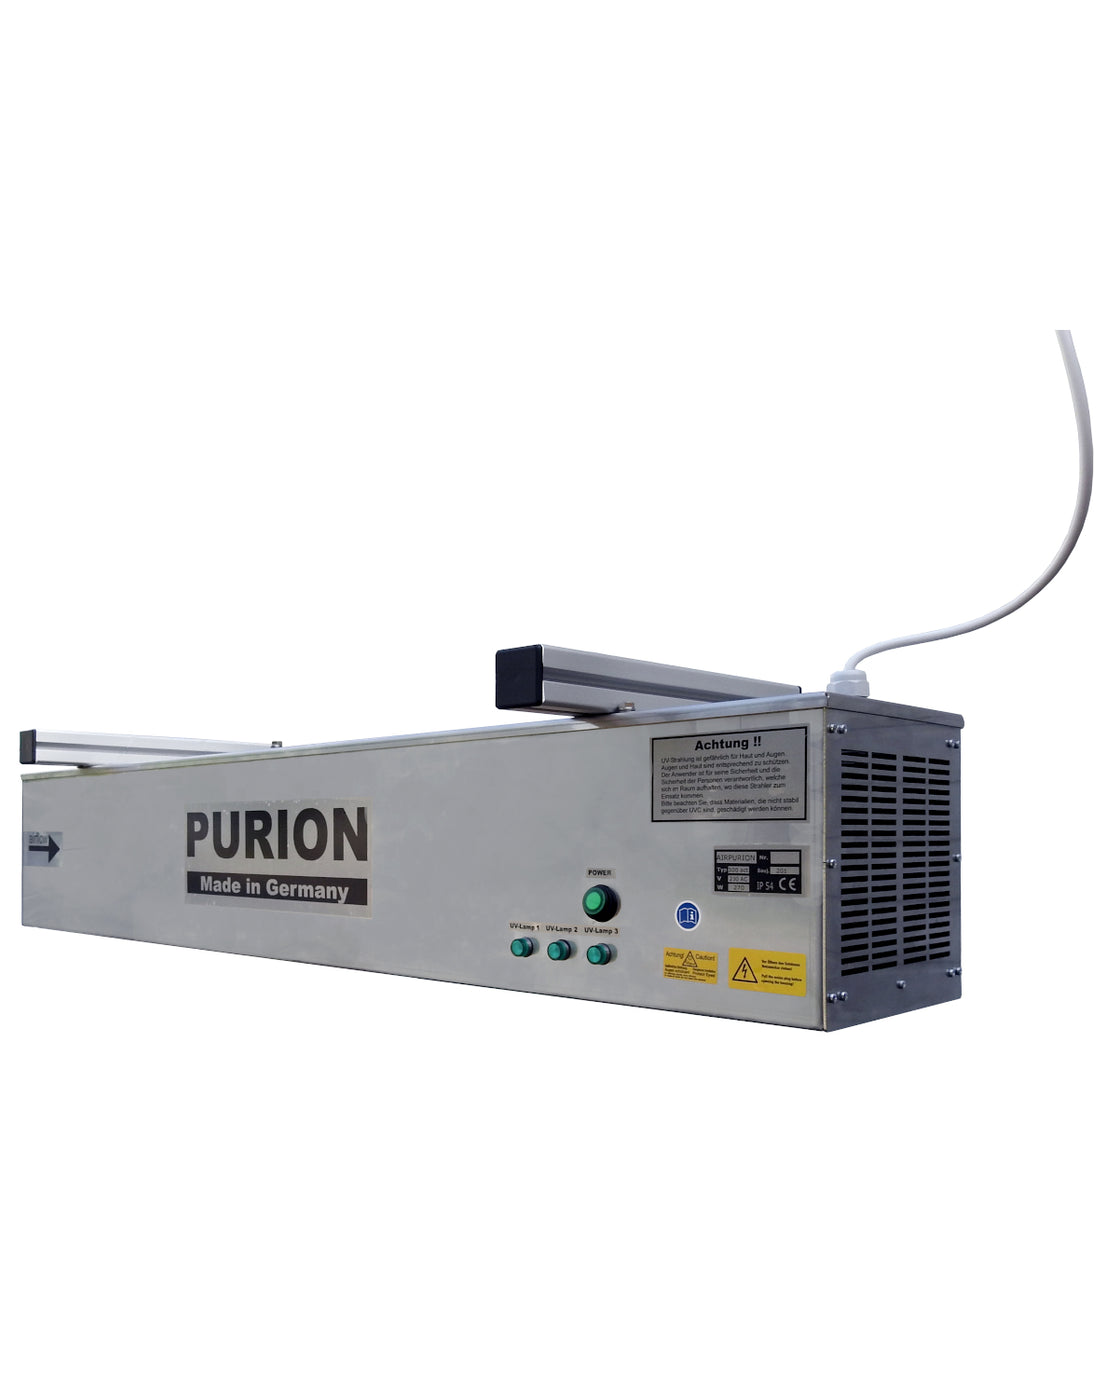 Auf weißem Hintergrund ist eine Purion-Maschine zu sehen, die AIRPURION 300 active Silent Basic der PURION GmbH. Die Maschine verfügt über eine hervorragende Desinfektionsleistung und bietet eine effektive Luftentkeimung.